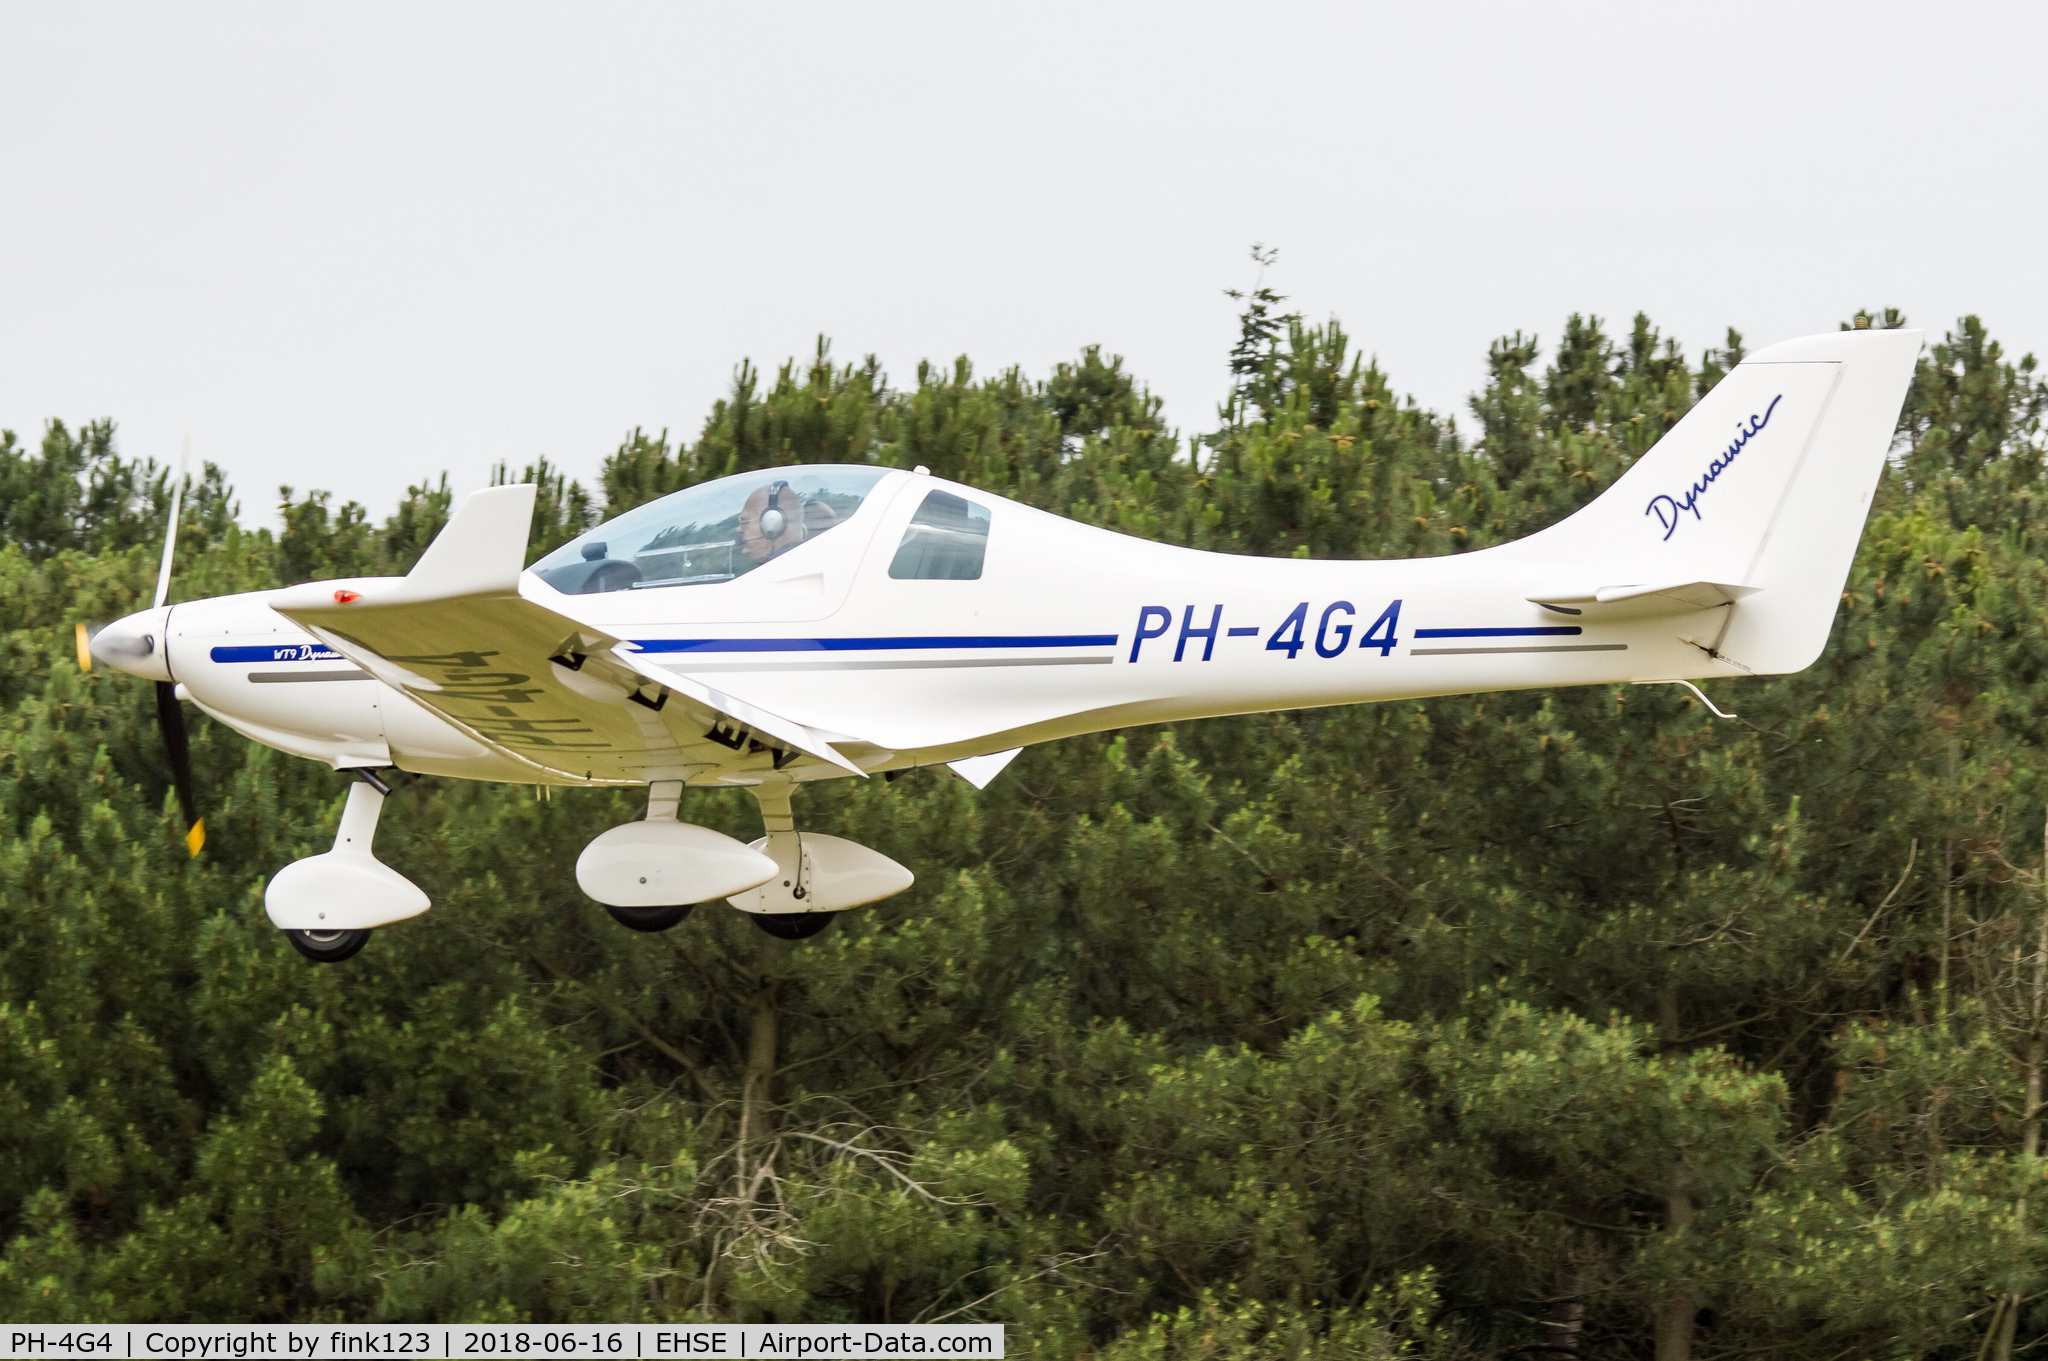 PH-4G4, 2010 Aerospool WT-9 Dynamic C/N DY378/2010, 